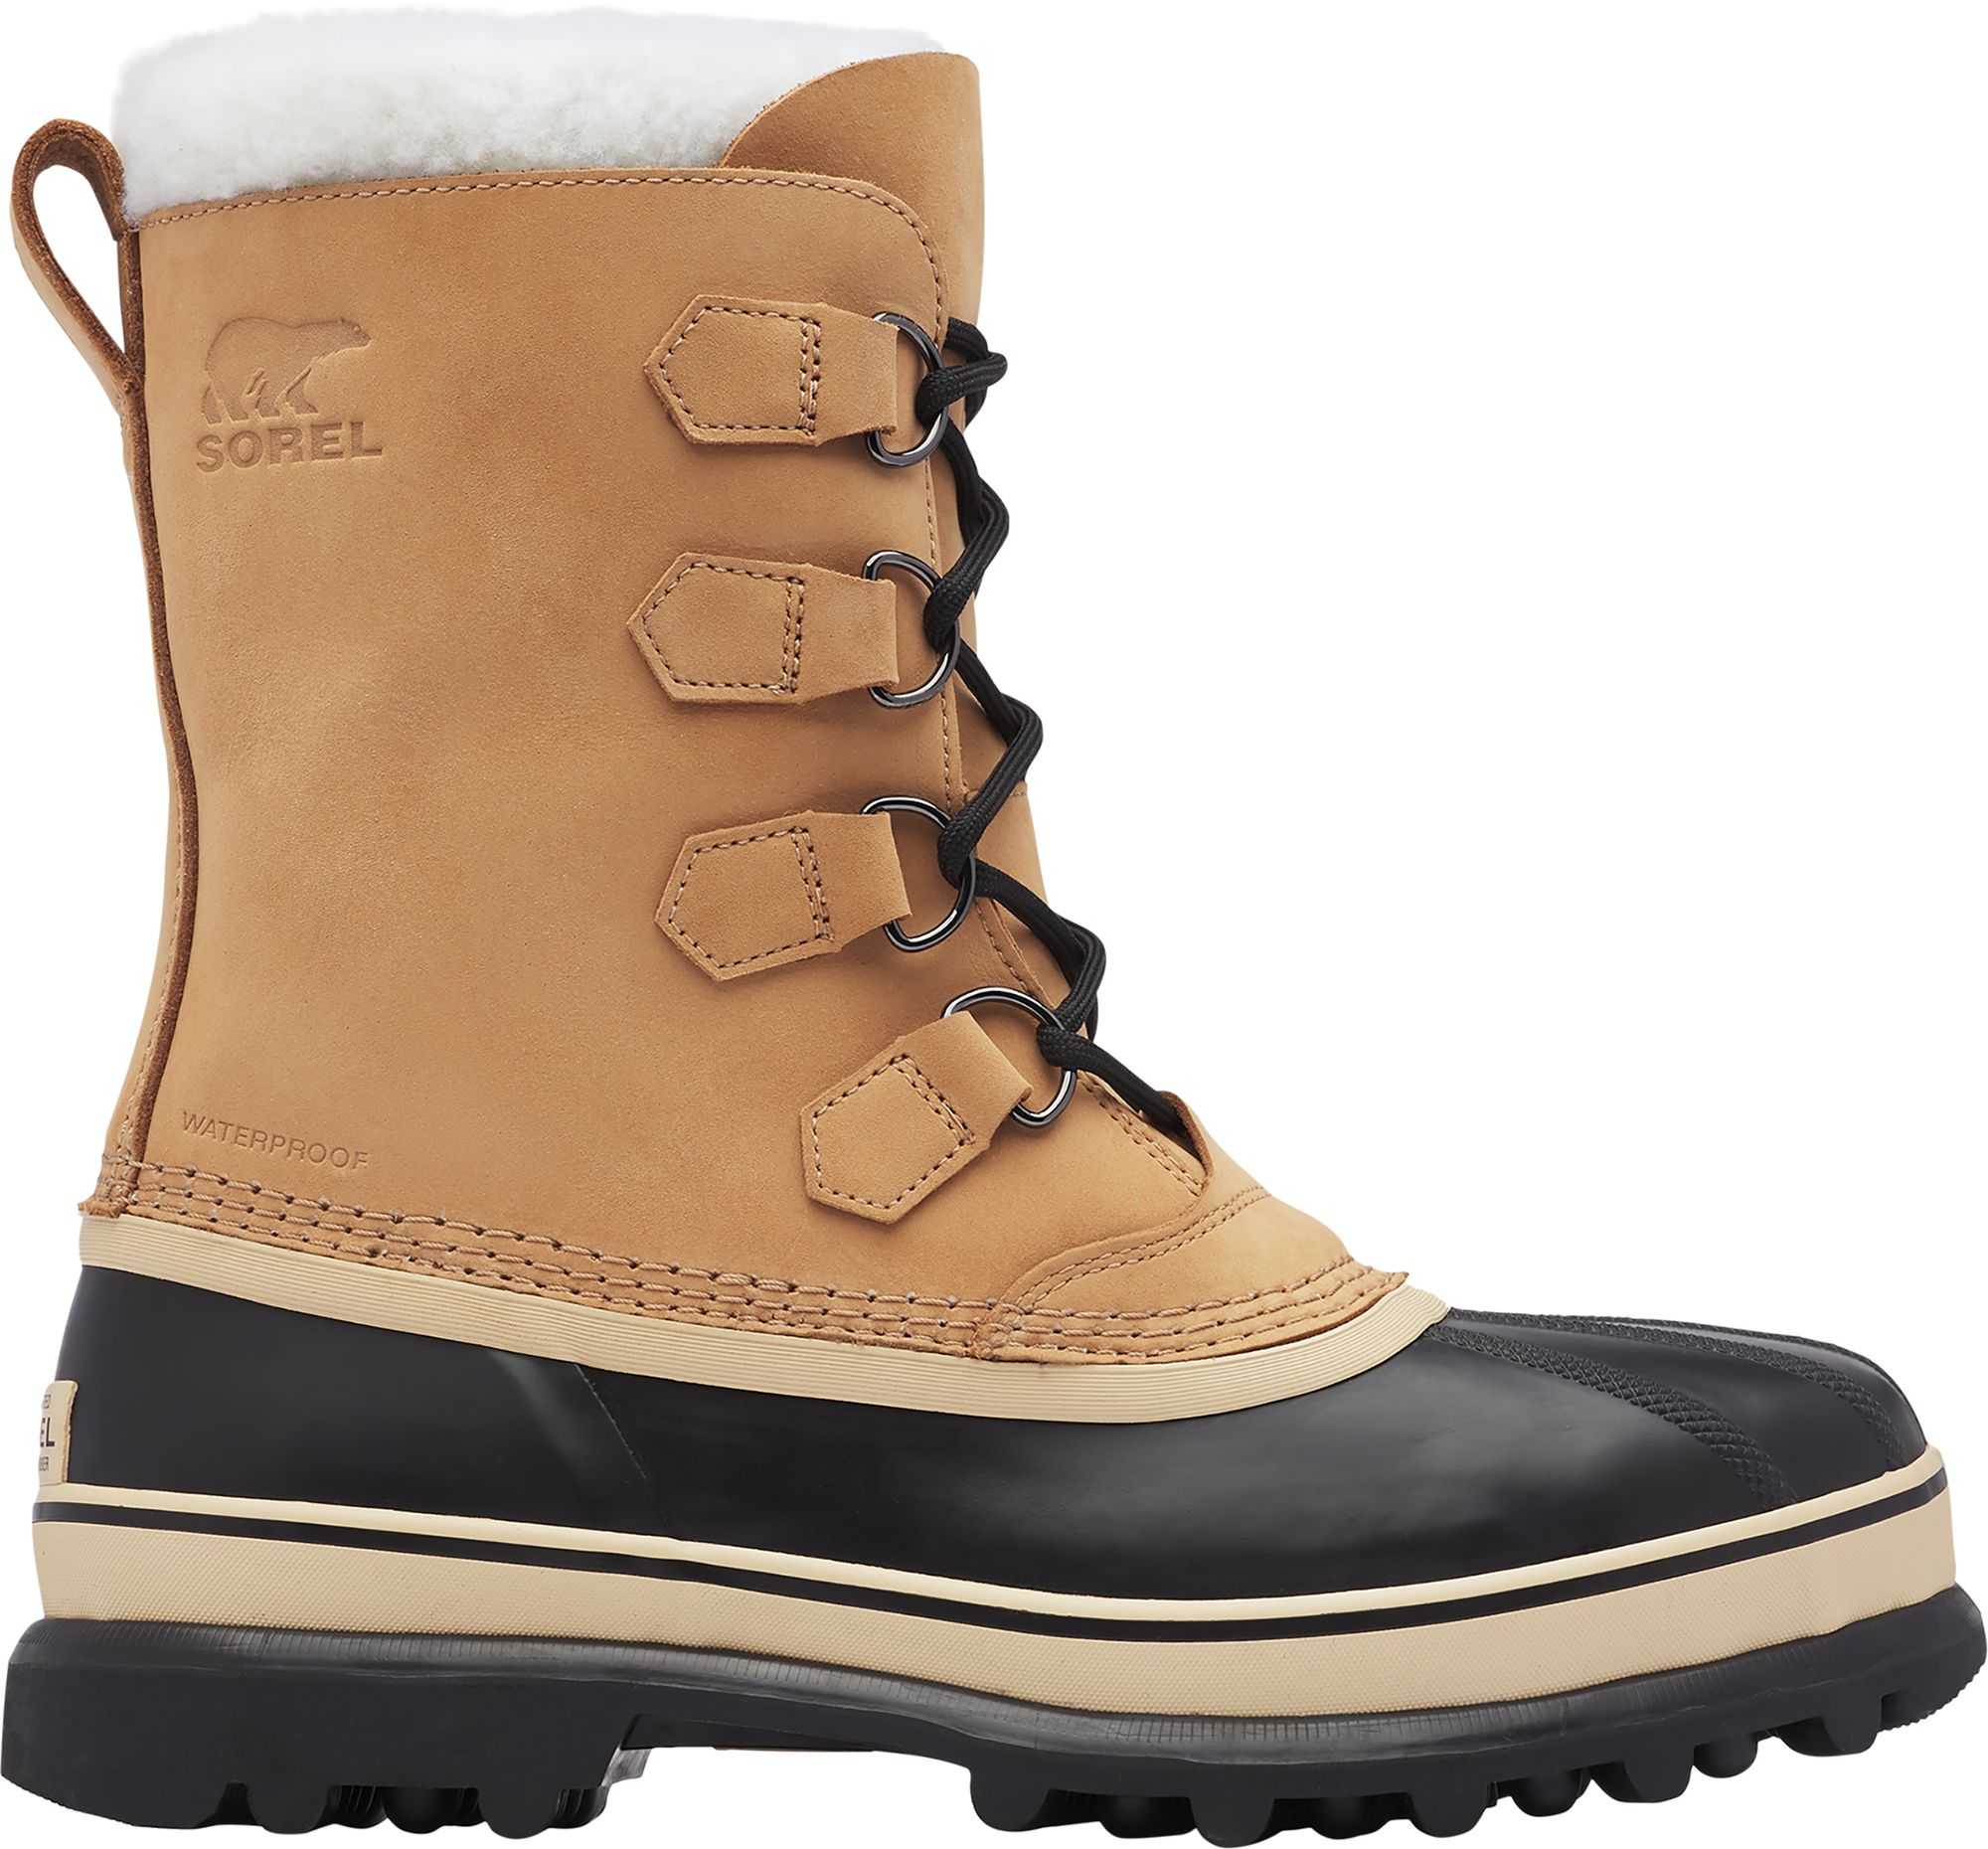 SOREL Men's Caribou Waterproof Winter Boots, Size 8.5, Buff